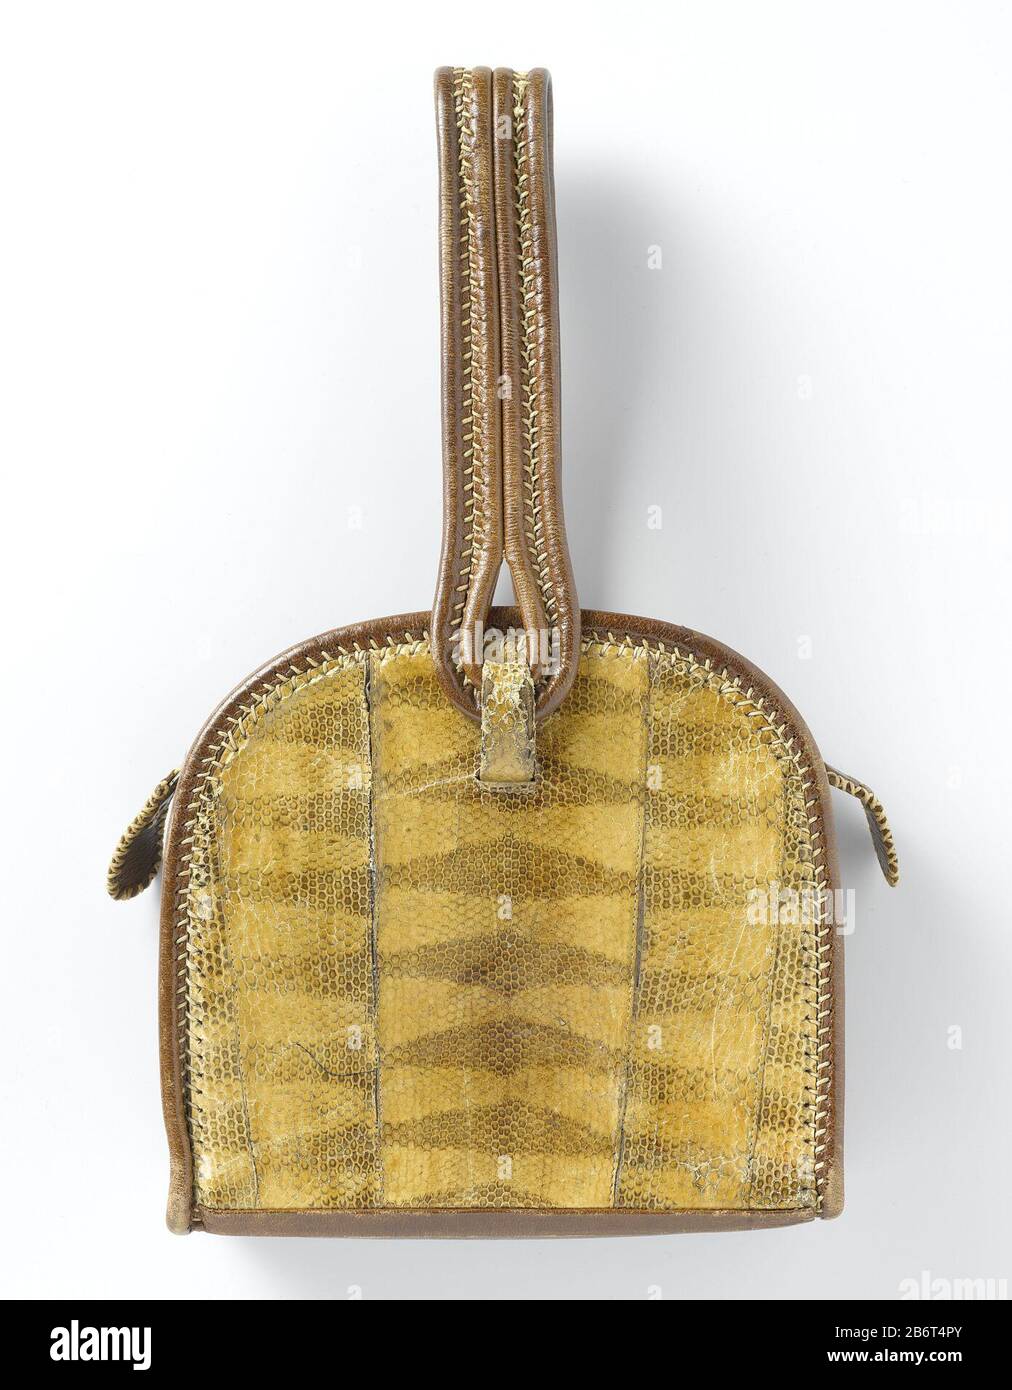 Handtas in een halfrond model, van bruin tuigleer, gegarneerd met slangenleer Handtas in een half rond model, van tuigleer, met aan de voor en achterkant bekleed slangenleer. Langs de